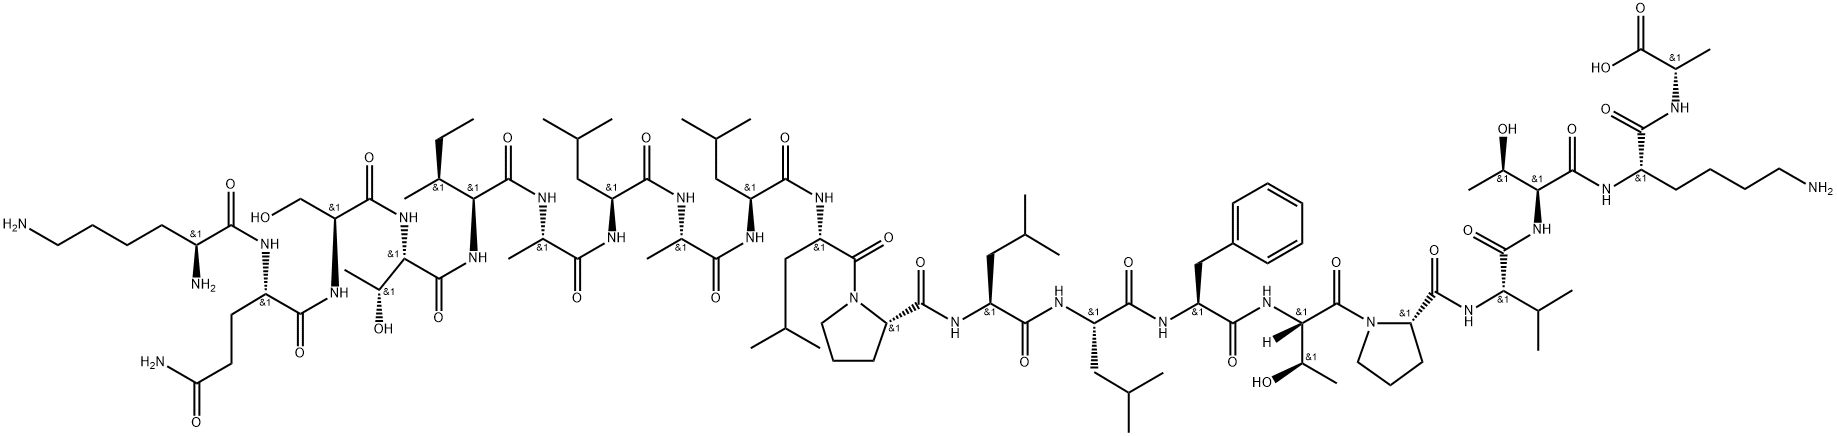 80395-90-0 碱性磷酸单酯酶(大肠杆菌)